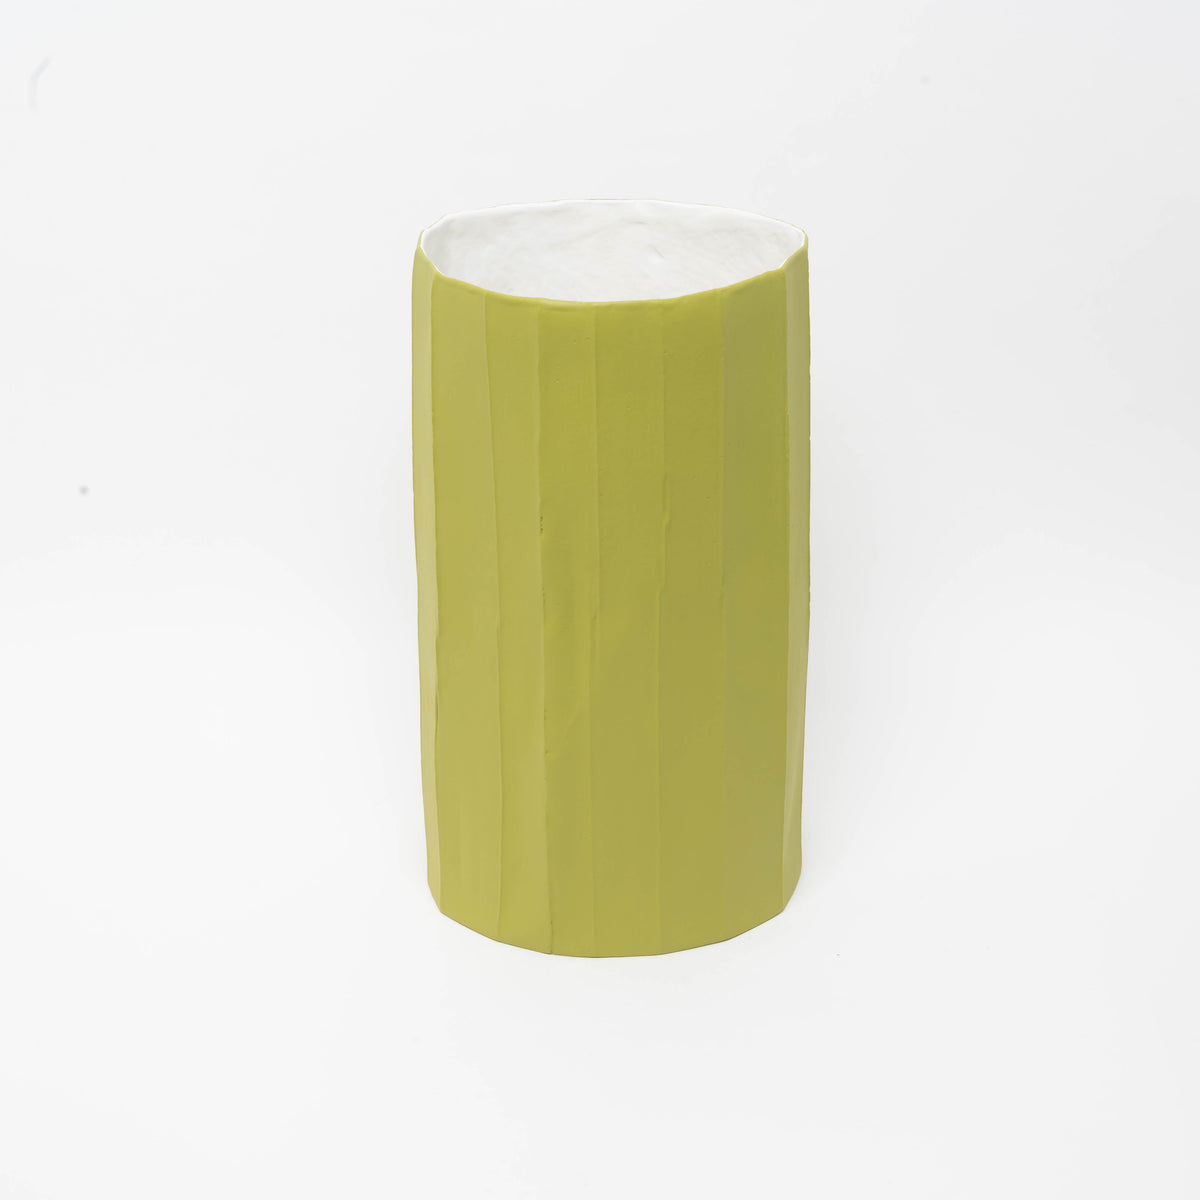 Gardenia Vase paperclay D25 H41, A1